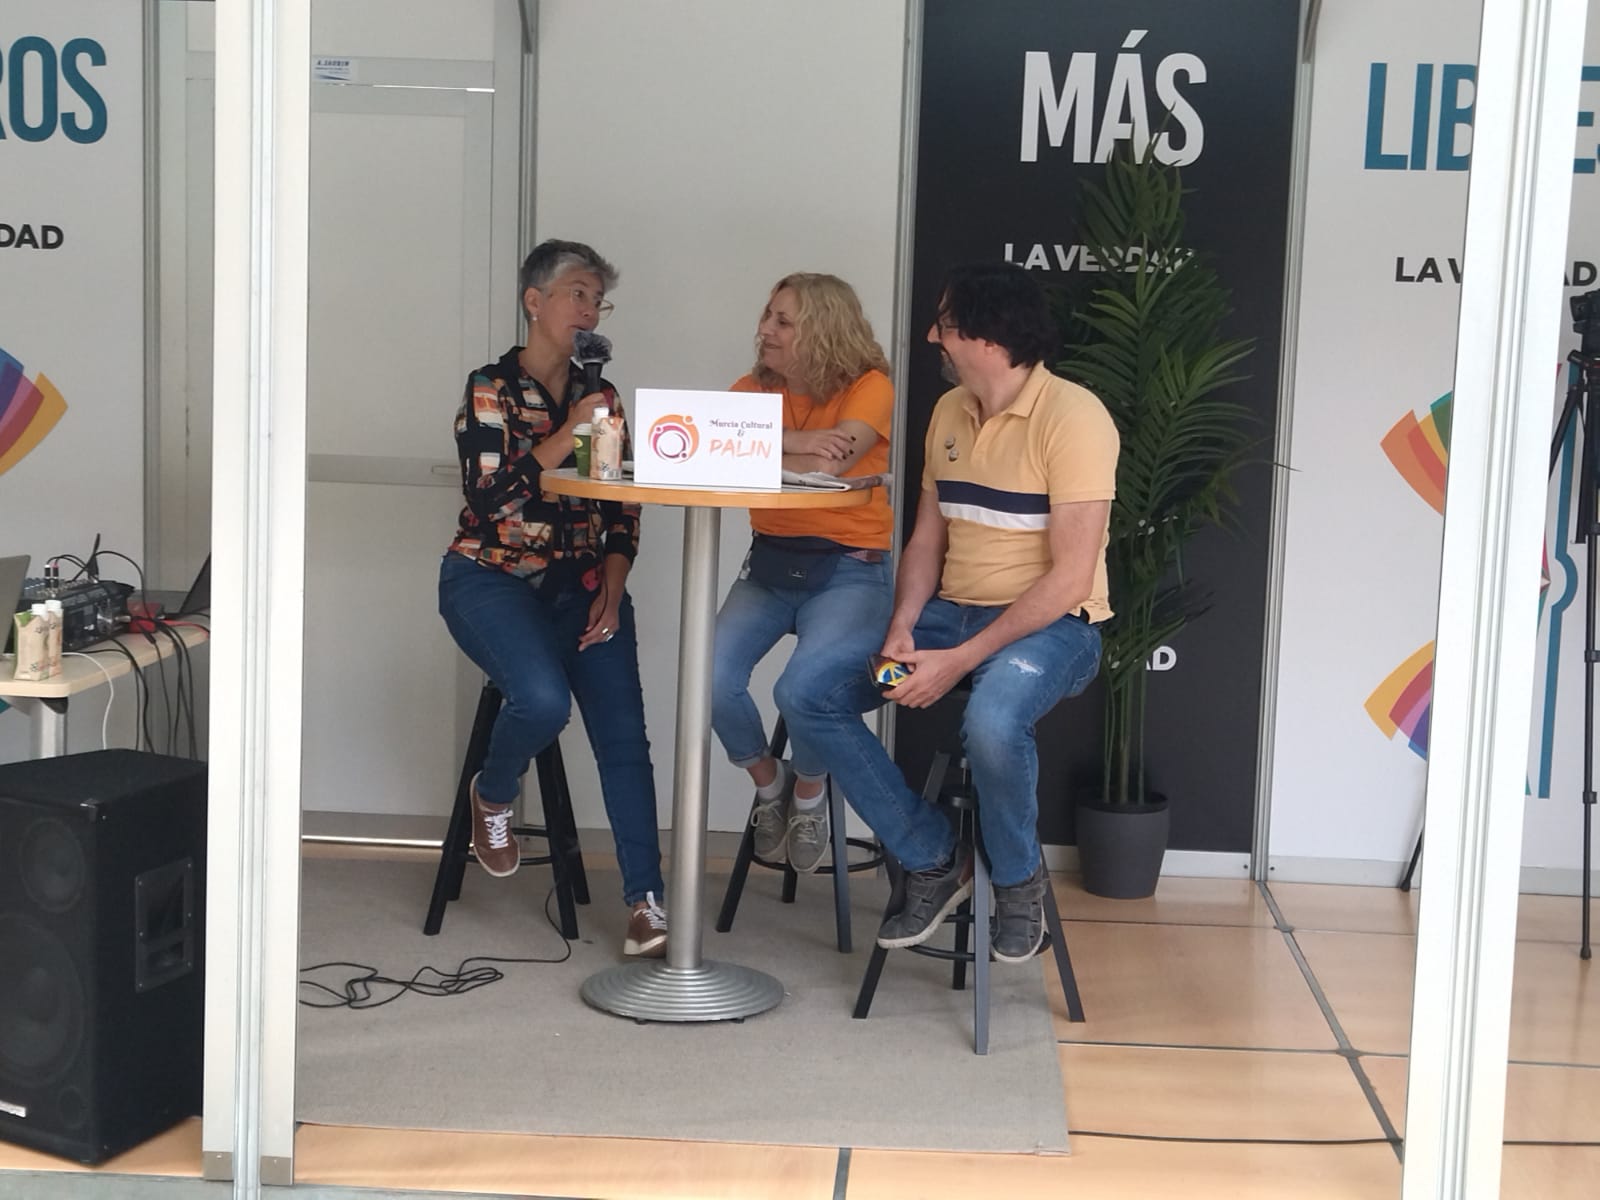 Mónica Jara, Pepa Sánchez y Sergio Reyes en directo en el podcast #Loqueseviene emitido en directo desde la caseta de La Verdad de la Feria del libro de Murcia 2022